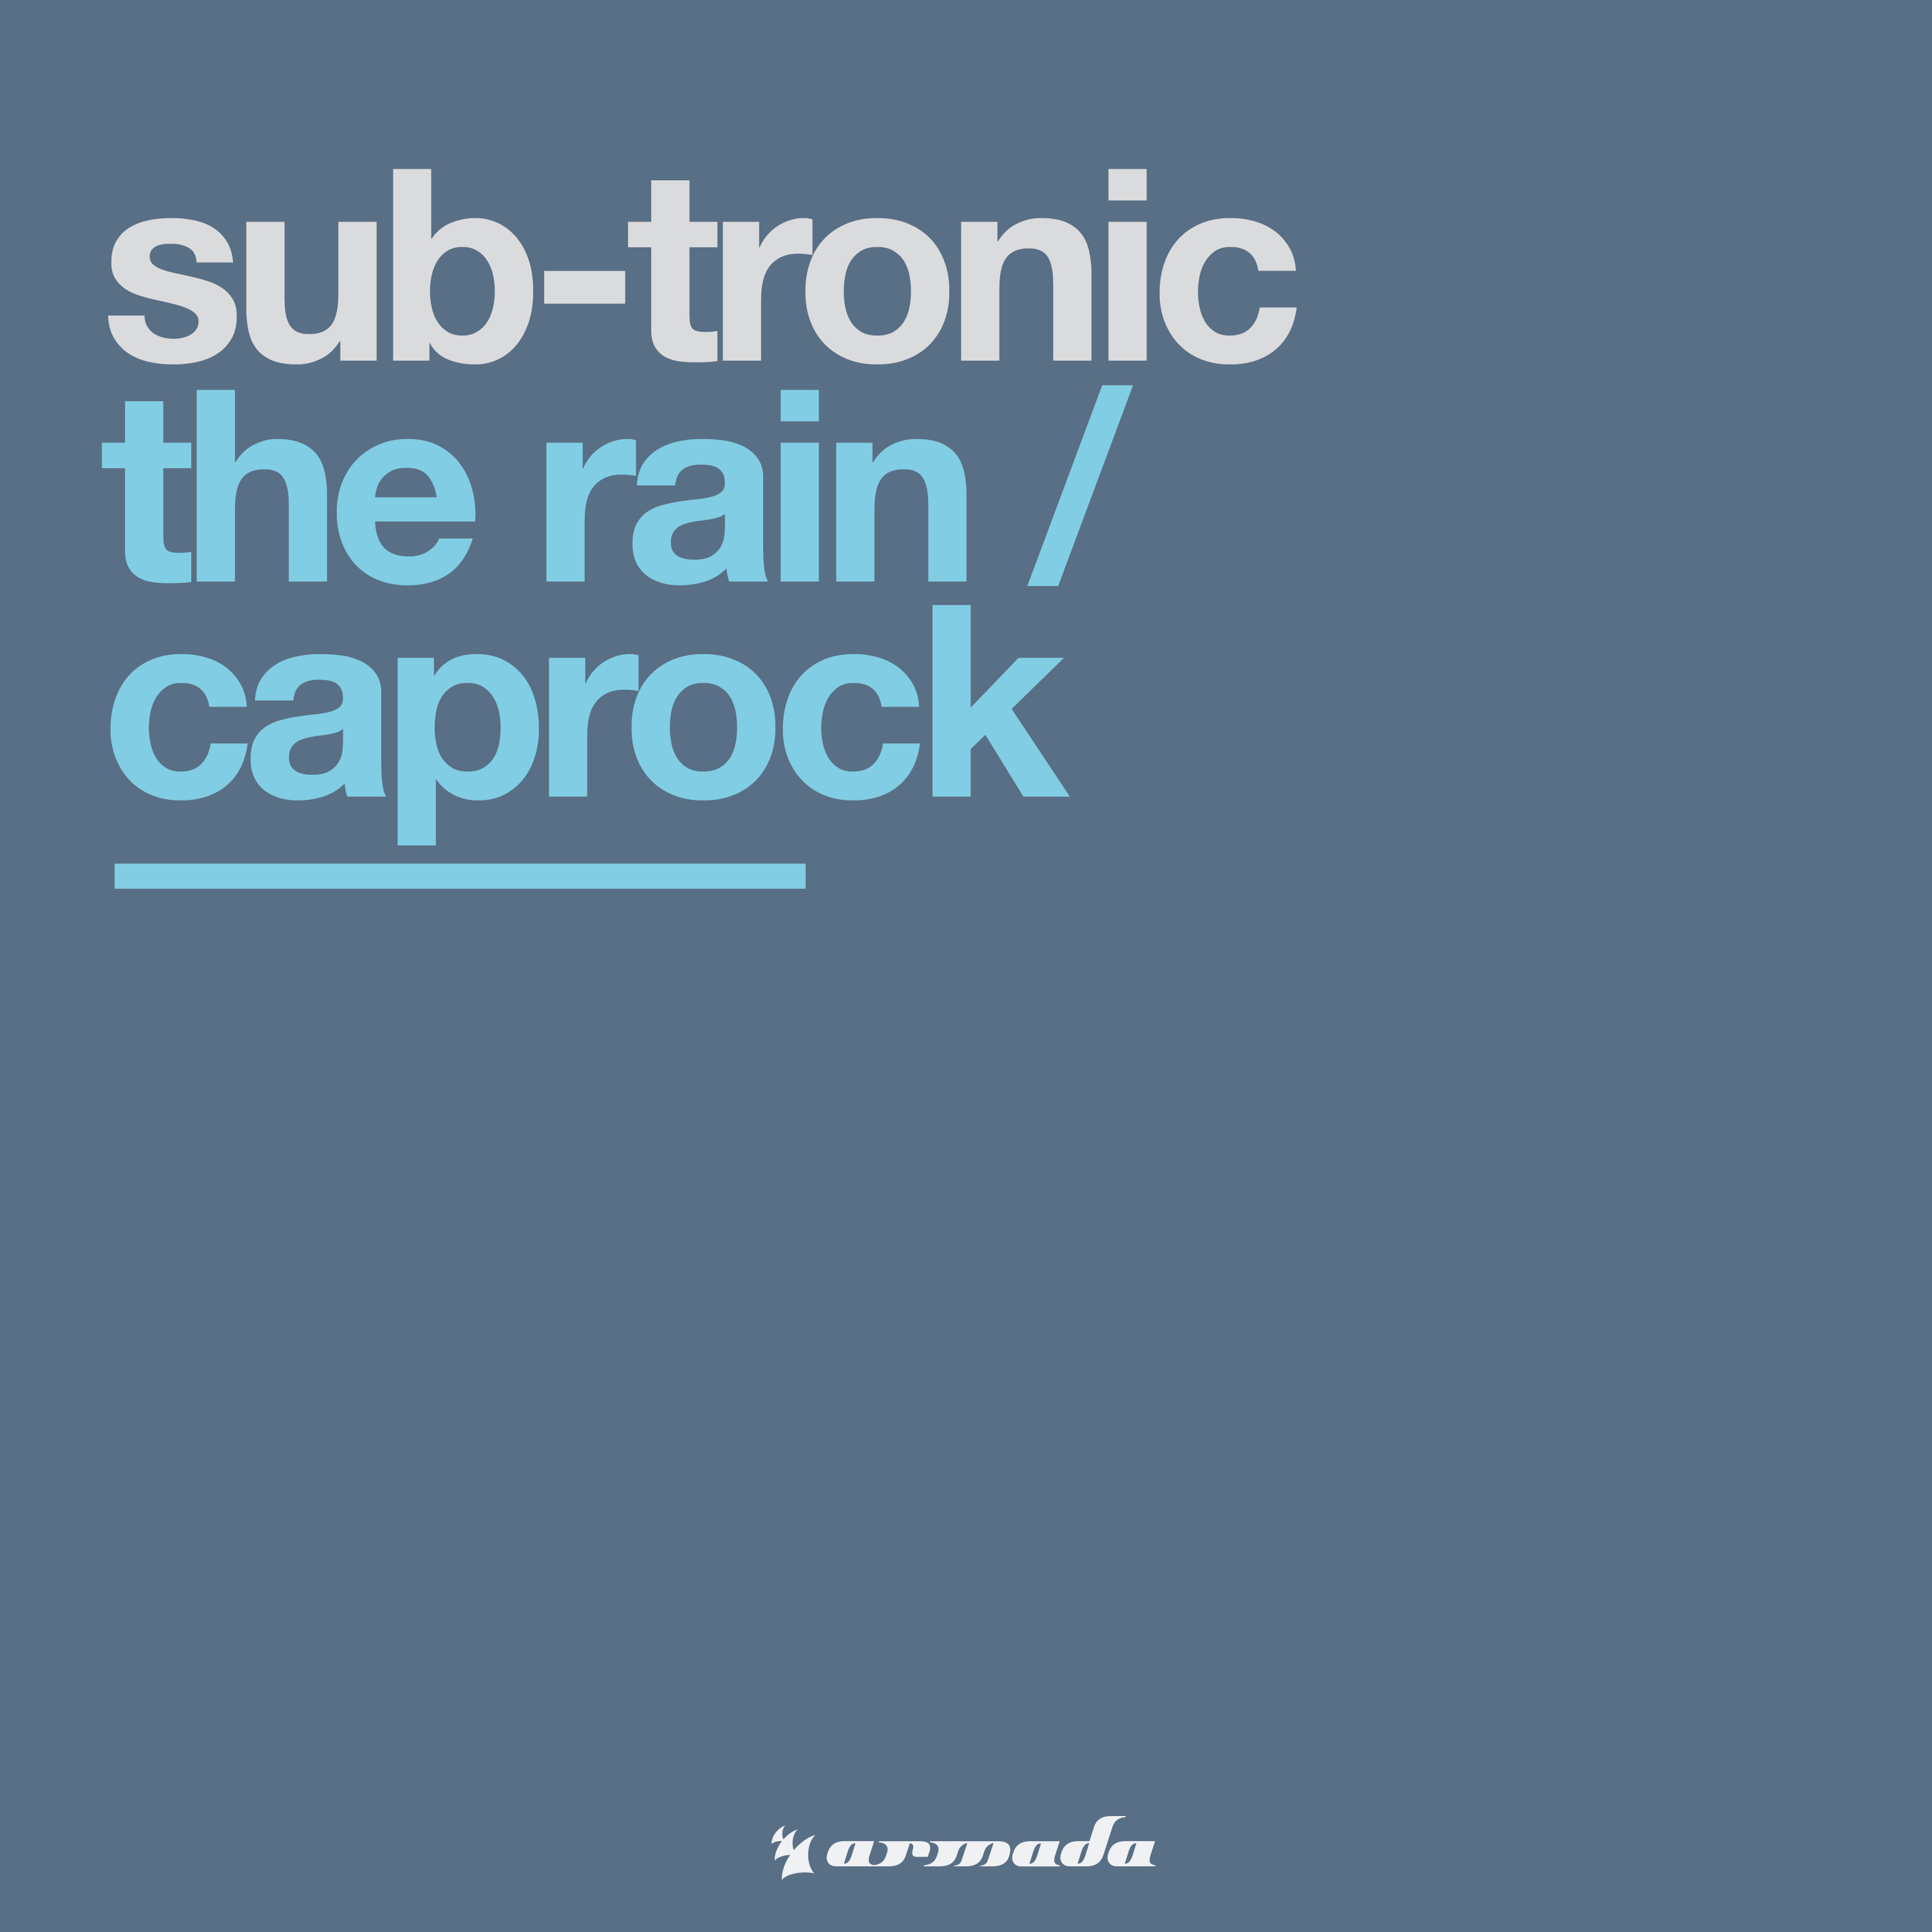 The Rain / Caprock